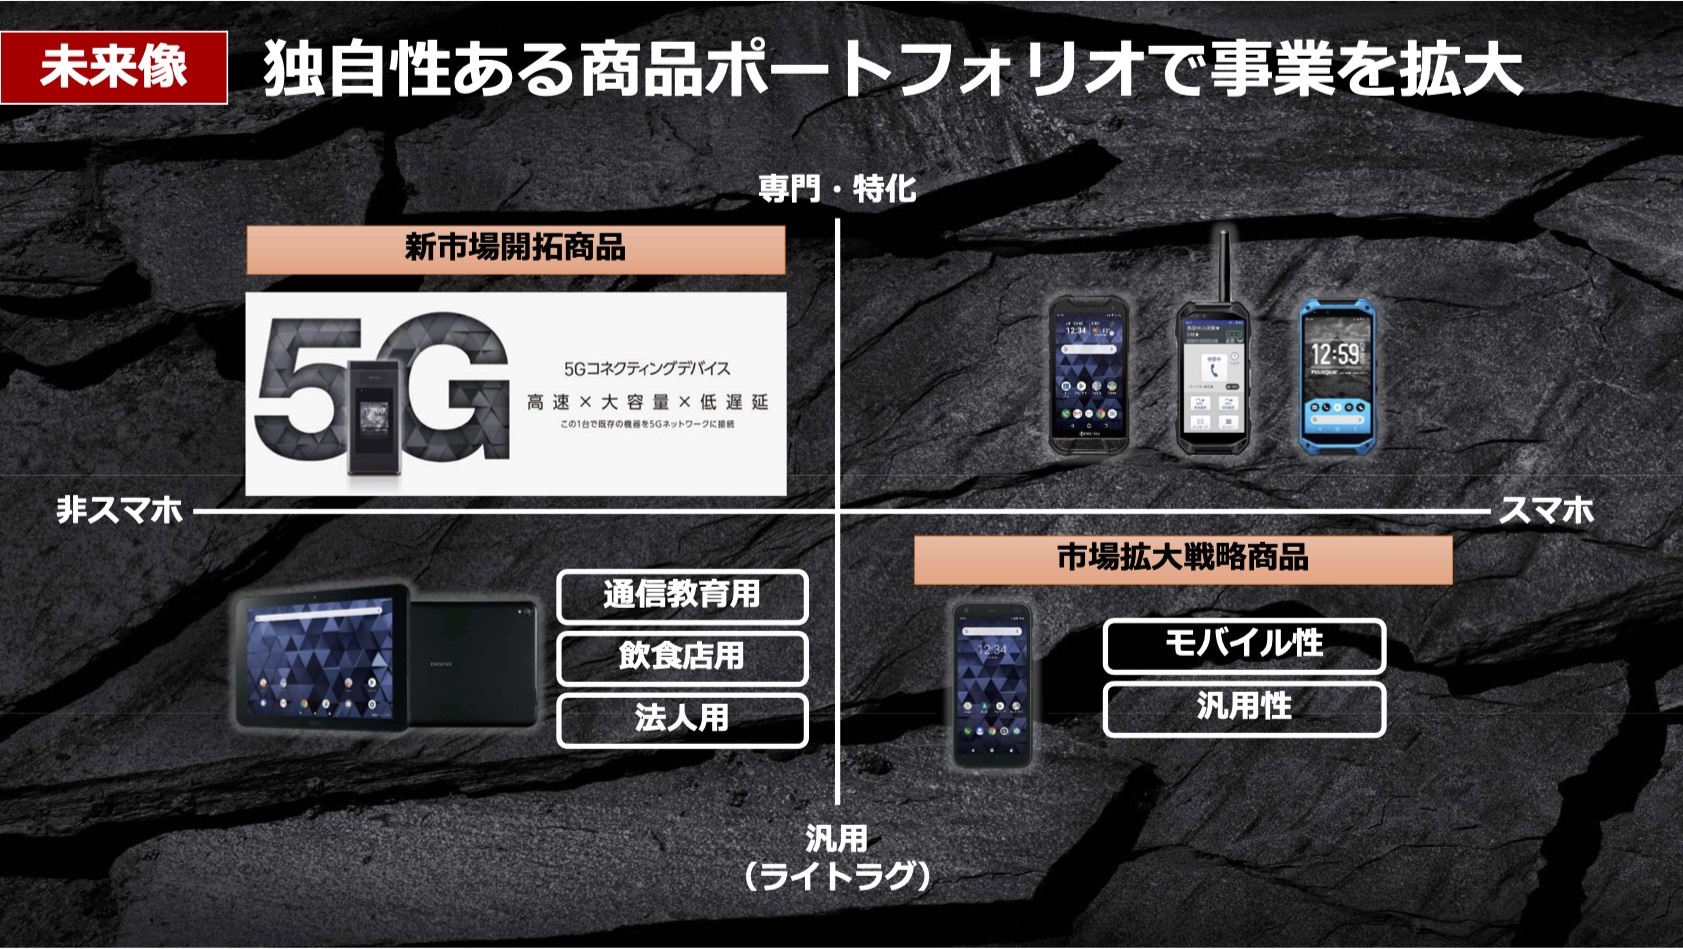 京セラ タフネススマホ Torque シリーズの5g対応次期モデルを今春発表へ S865搭載の5gコネクティングデバイスも今春より本格販売 S Max